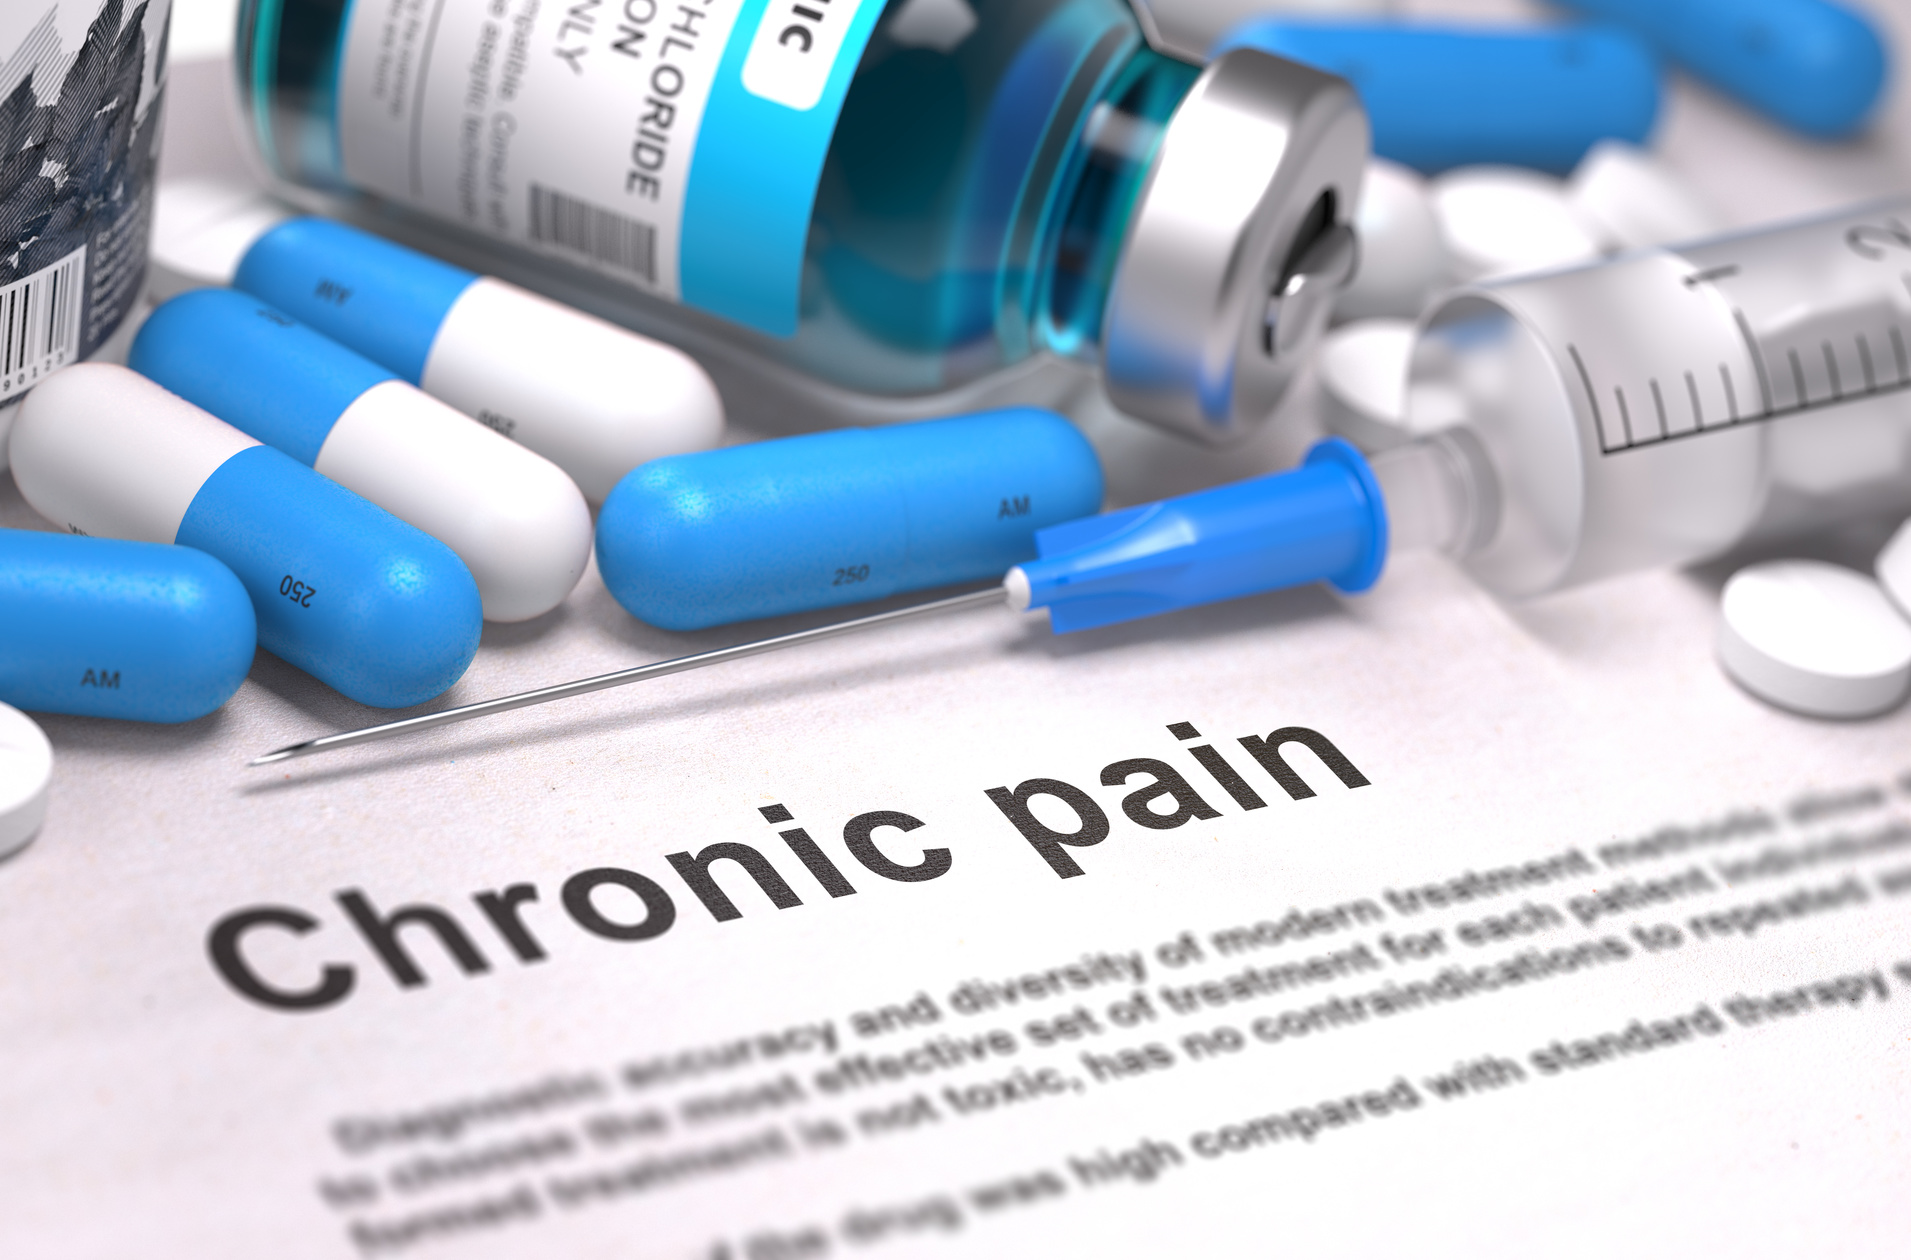 chronic pain pill bottles open